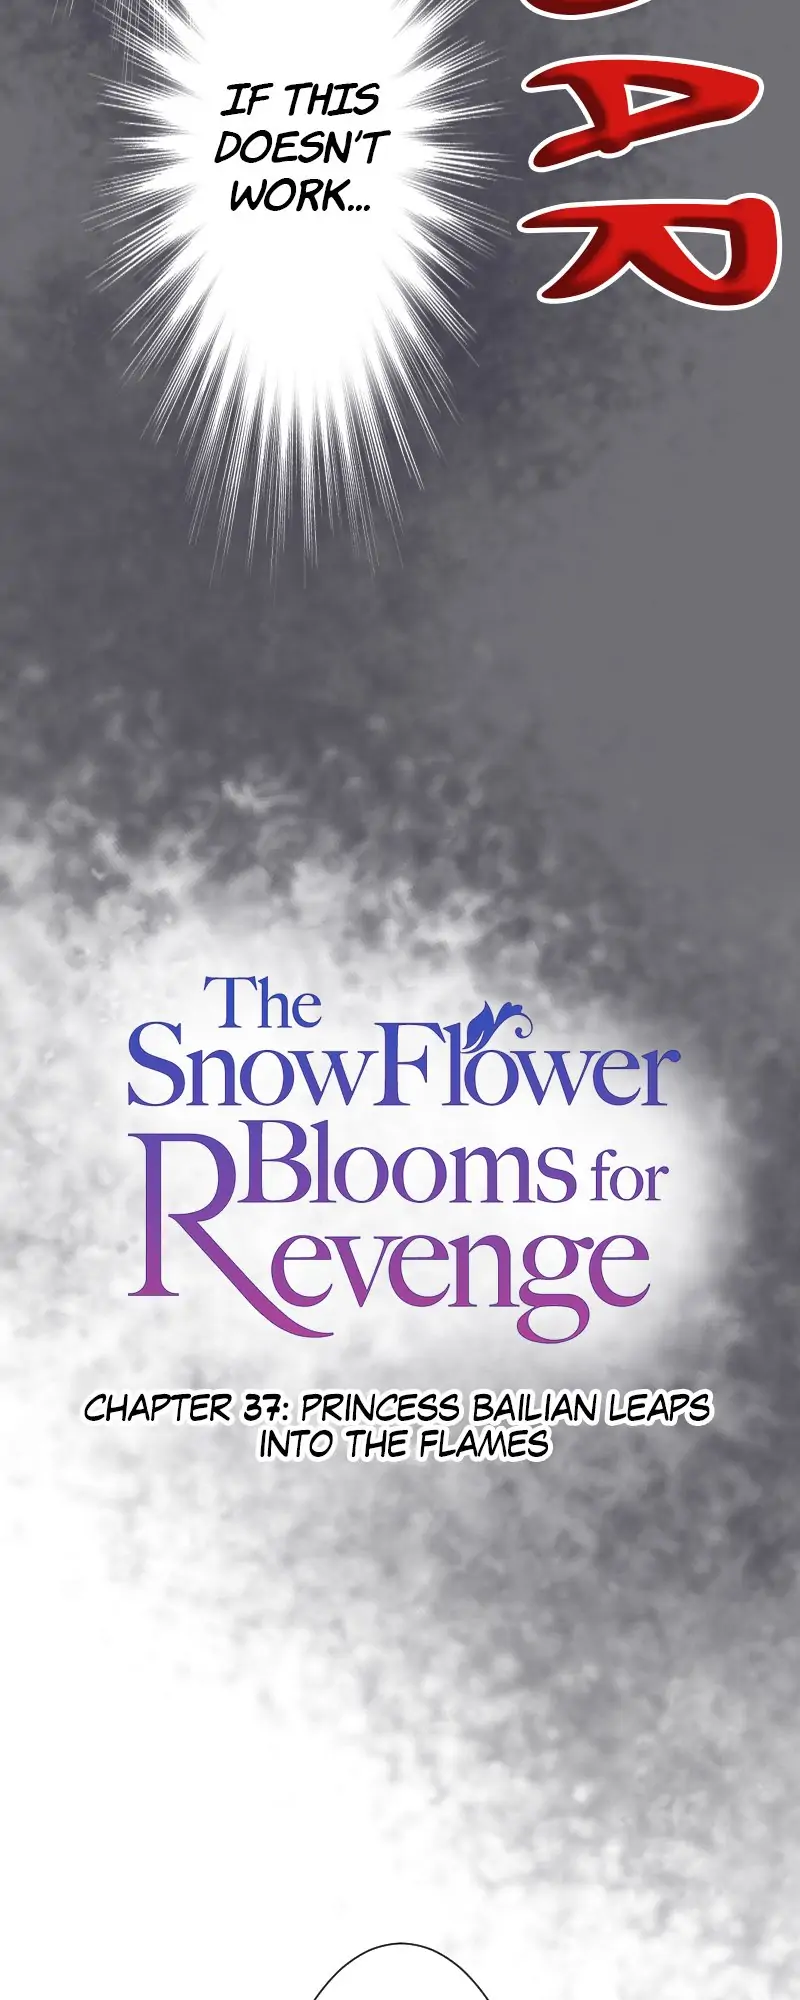 The Snowflower Blooms for Revenge chapter 37